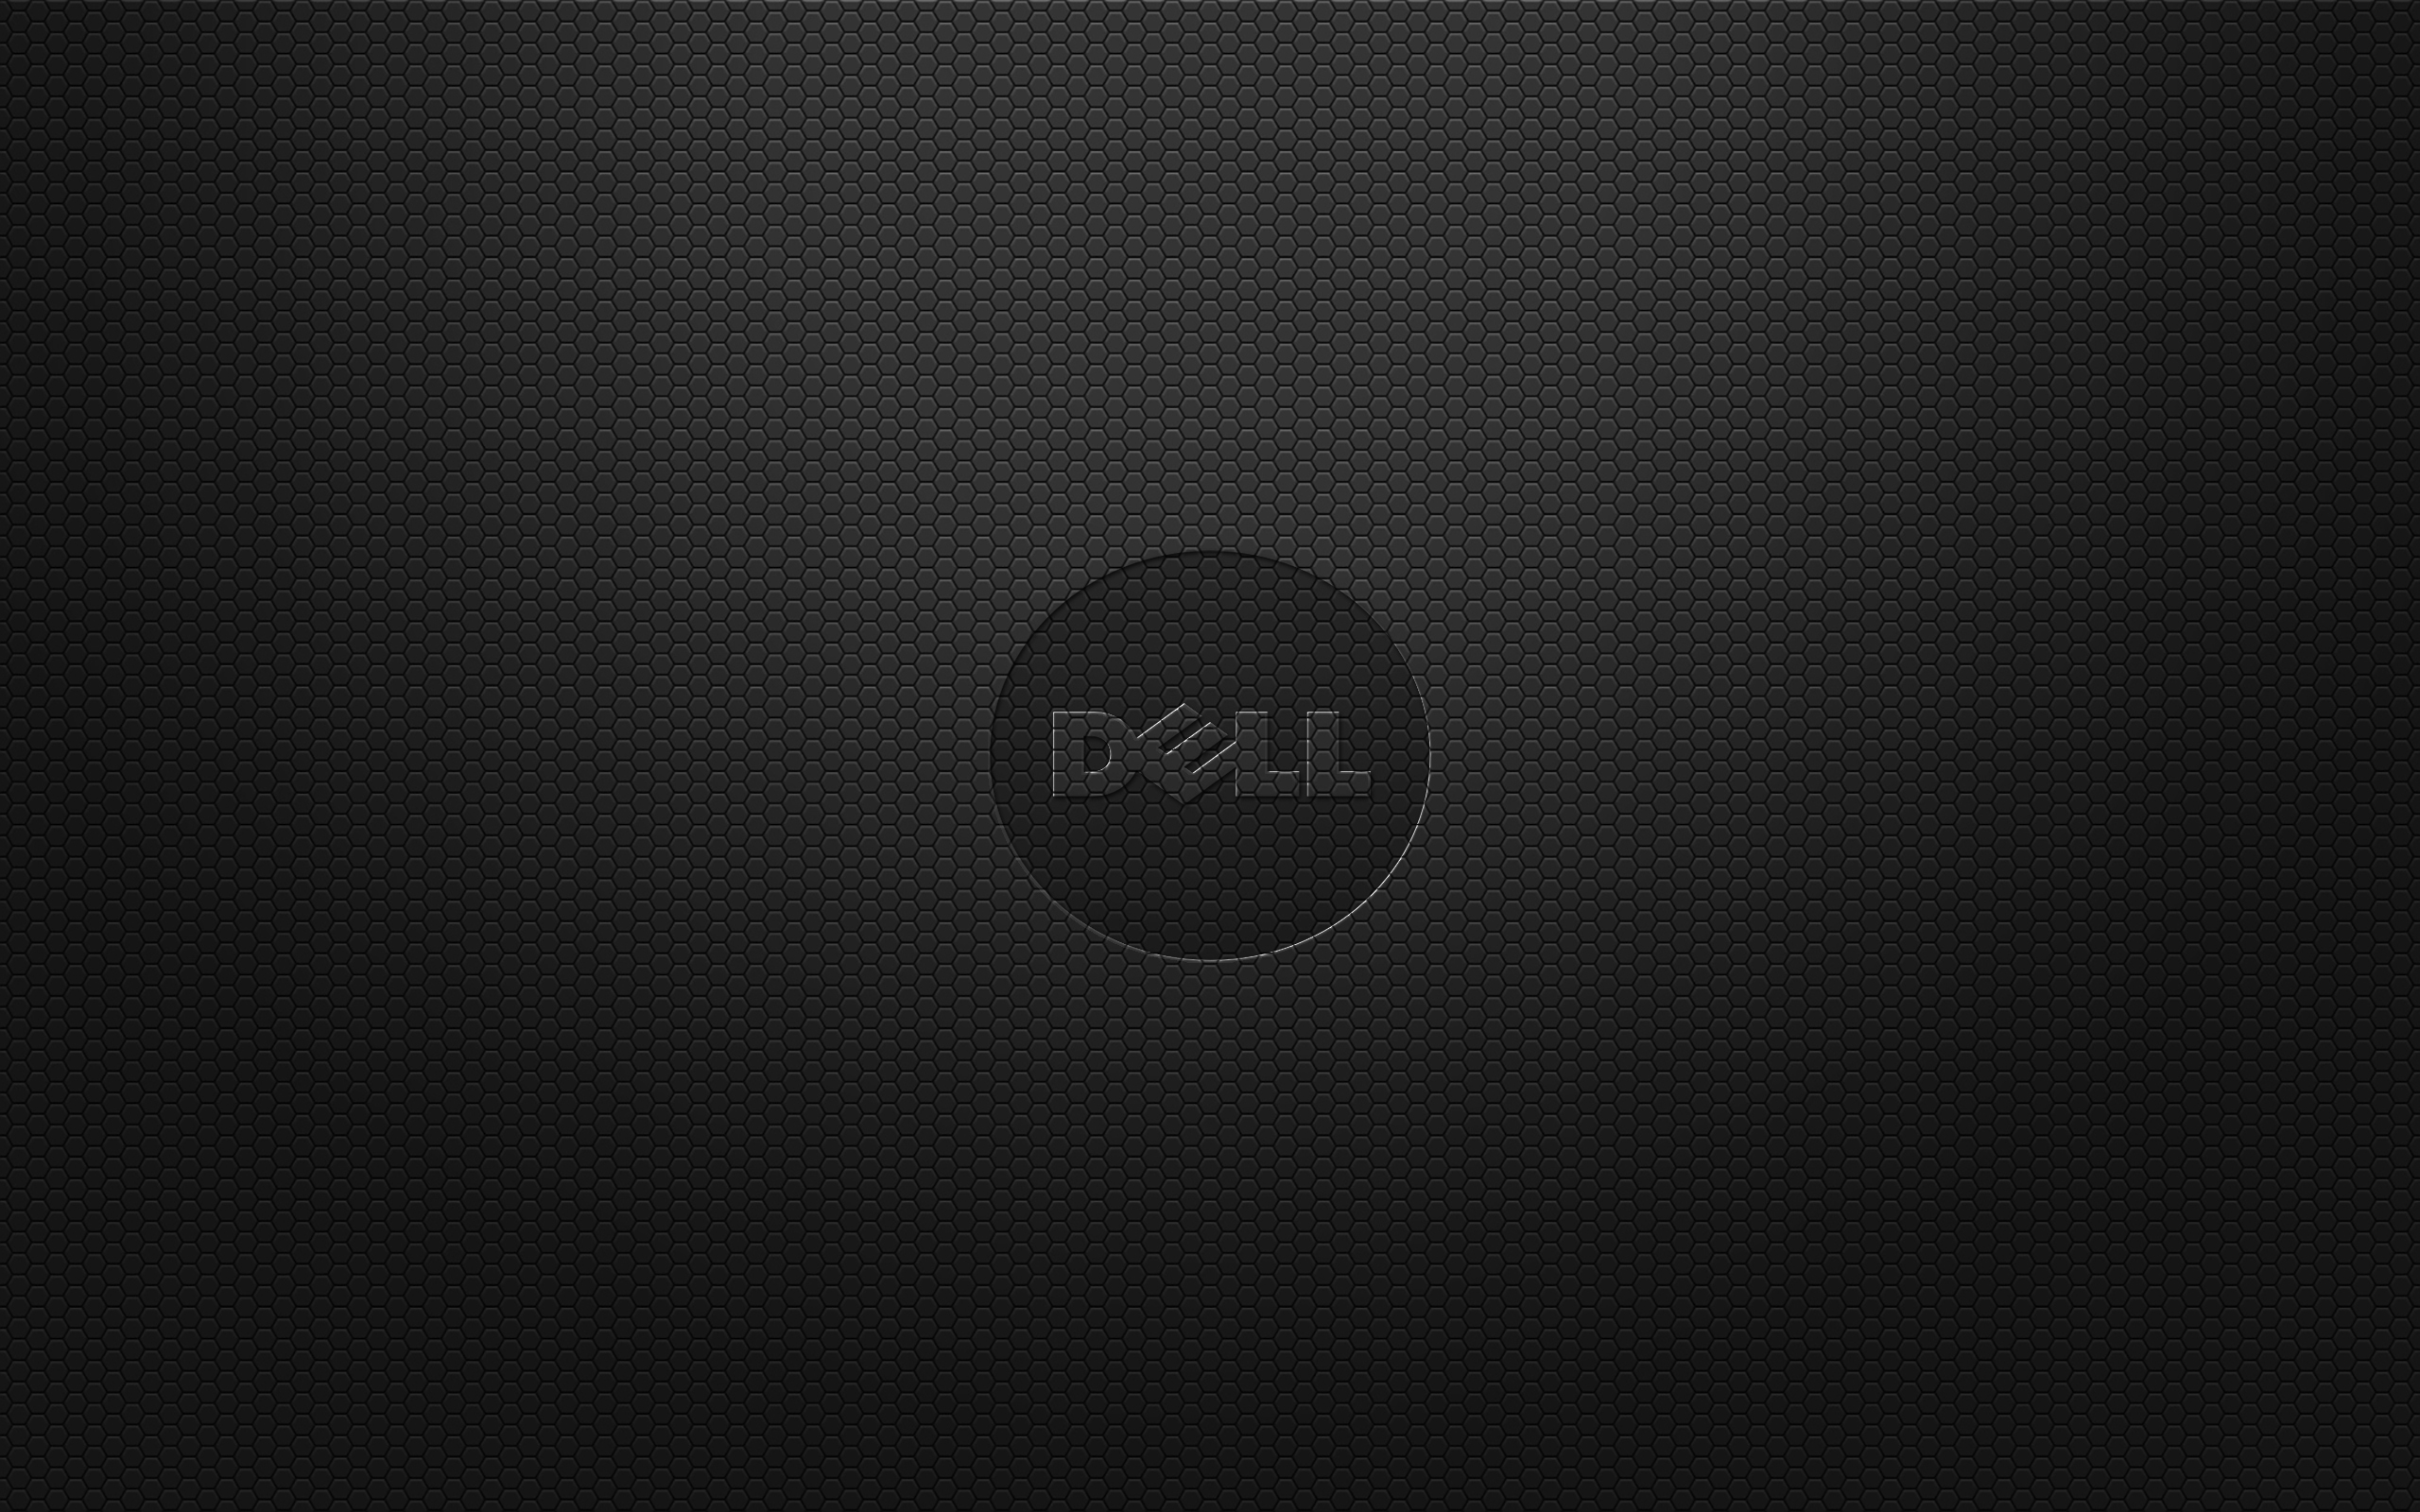 Dell Logo Digital Art Minimalism Texture 2560x1600